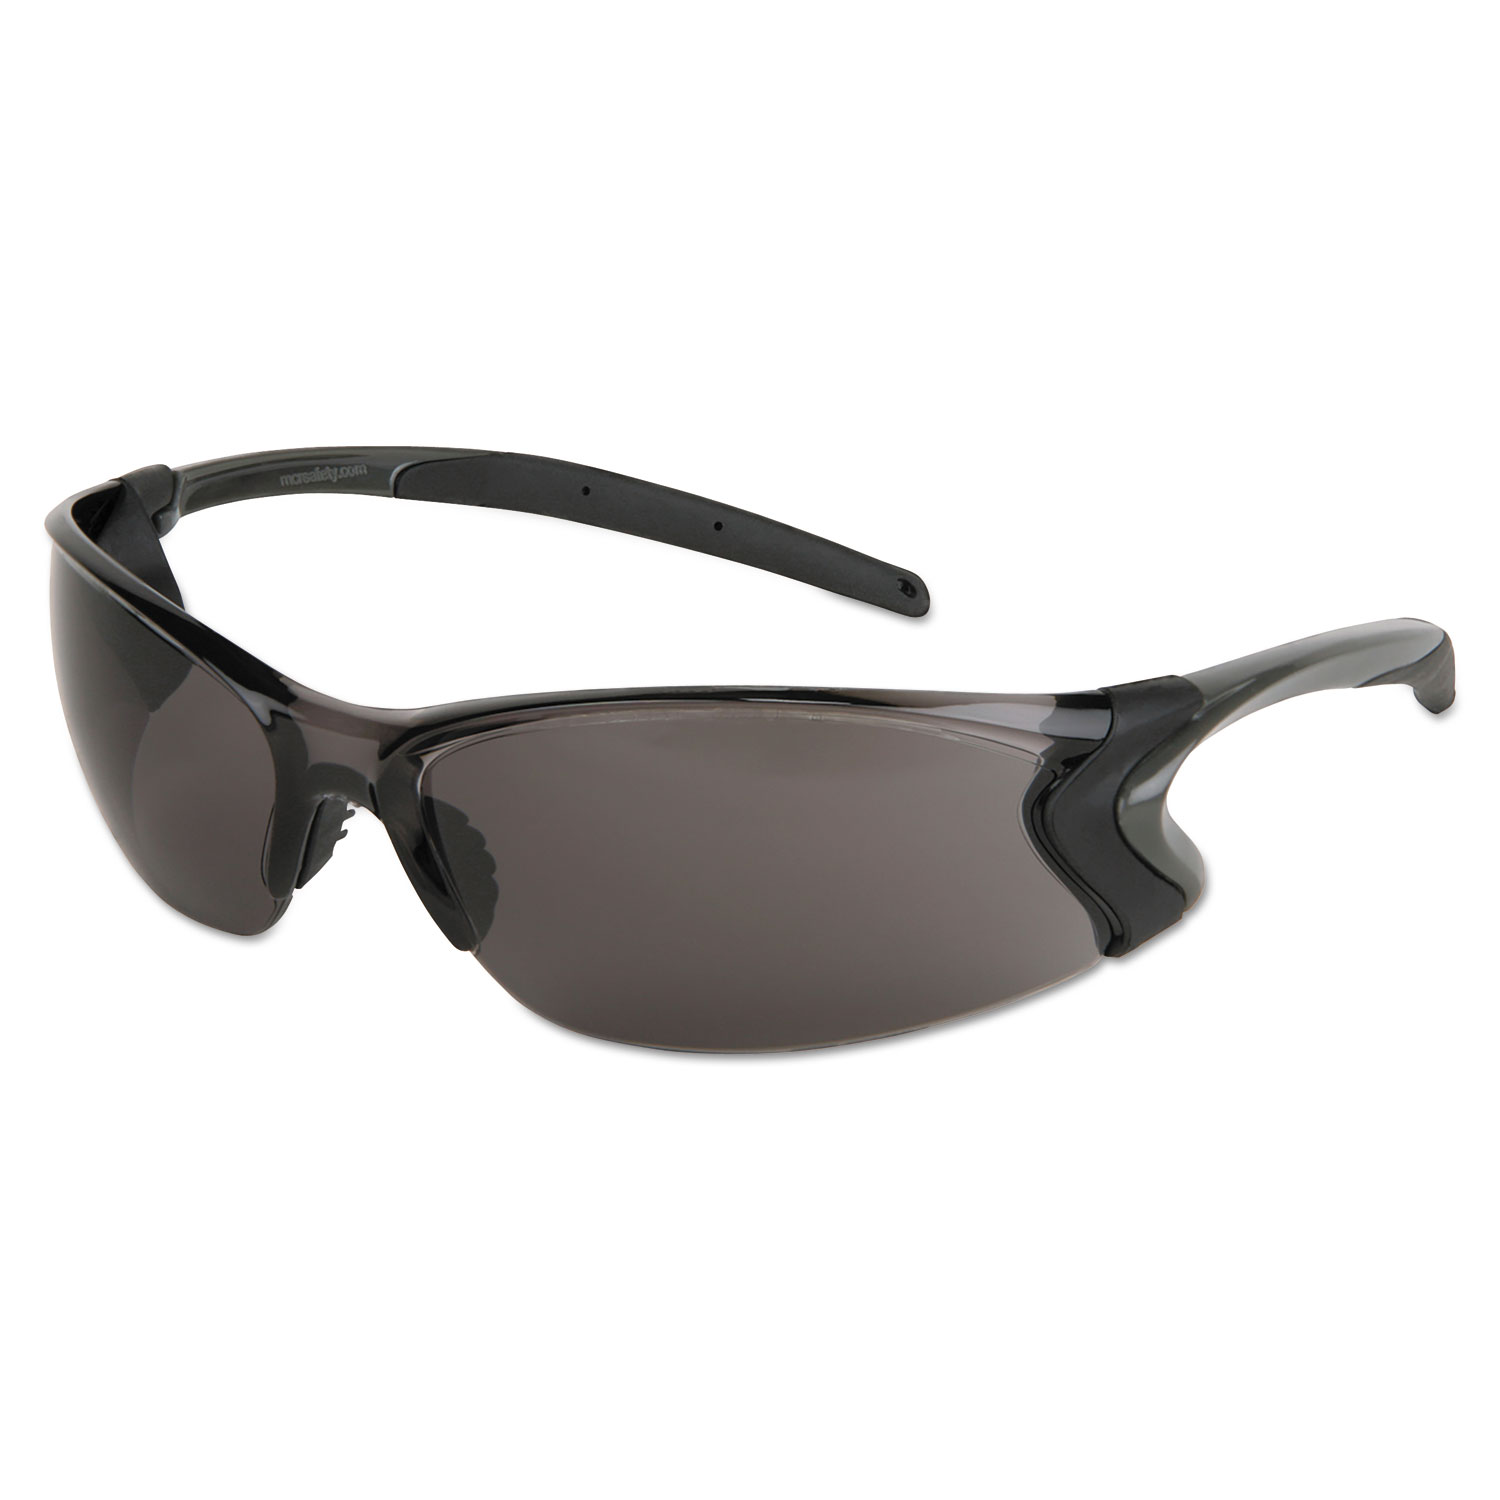 Backdraft Glasses, Clear Frame, Anti-Fog Gray Lens